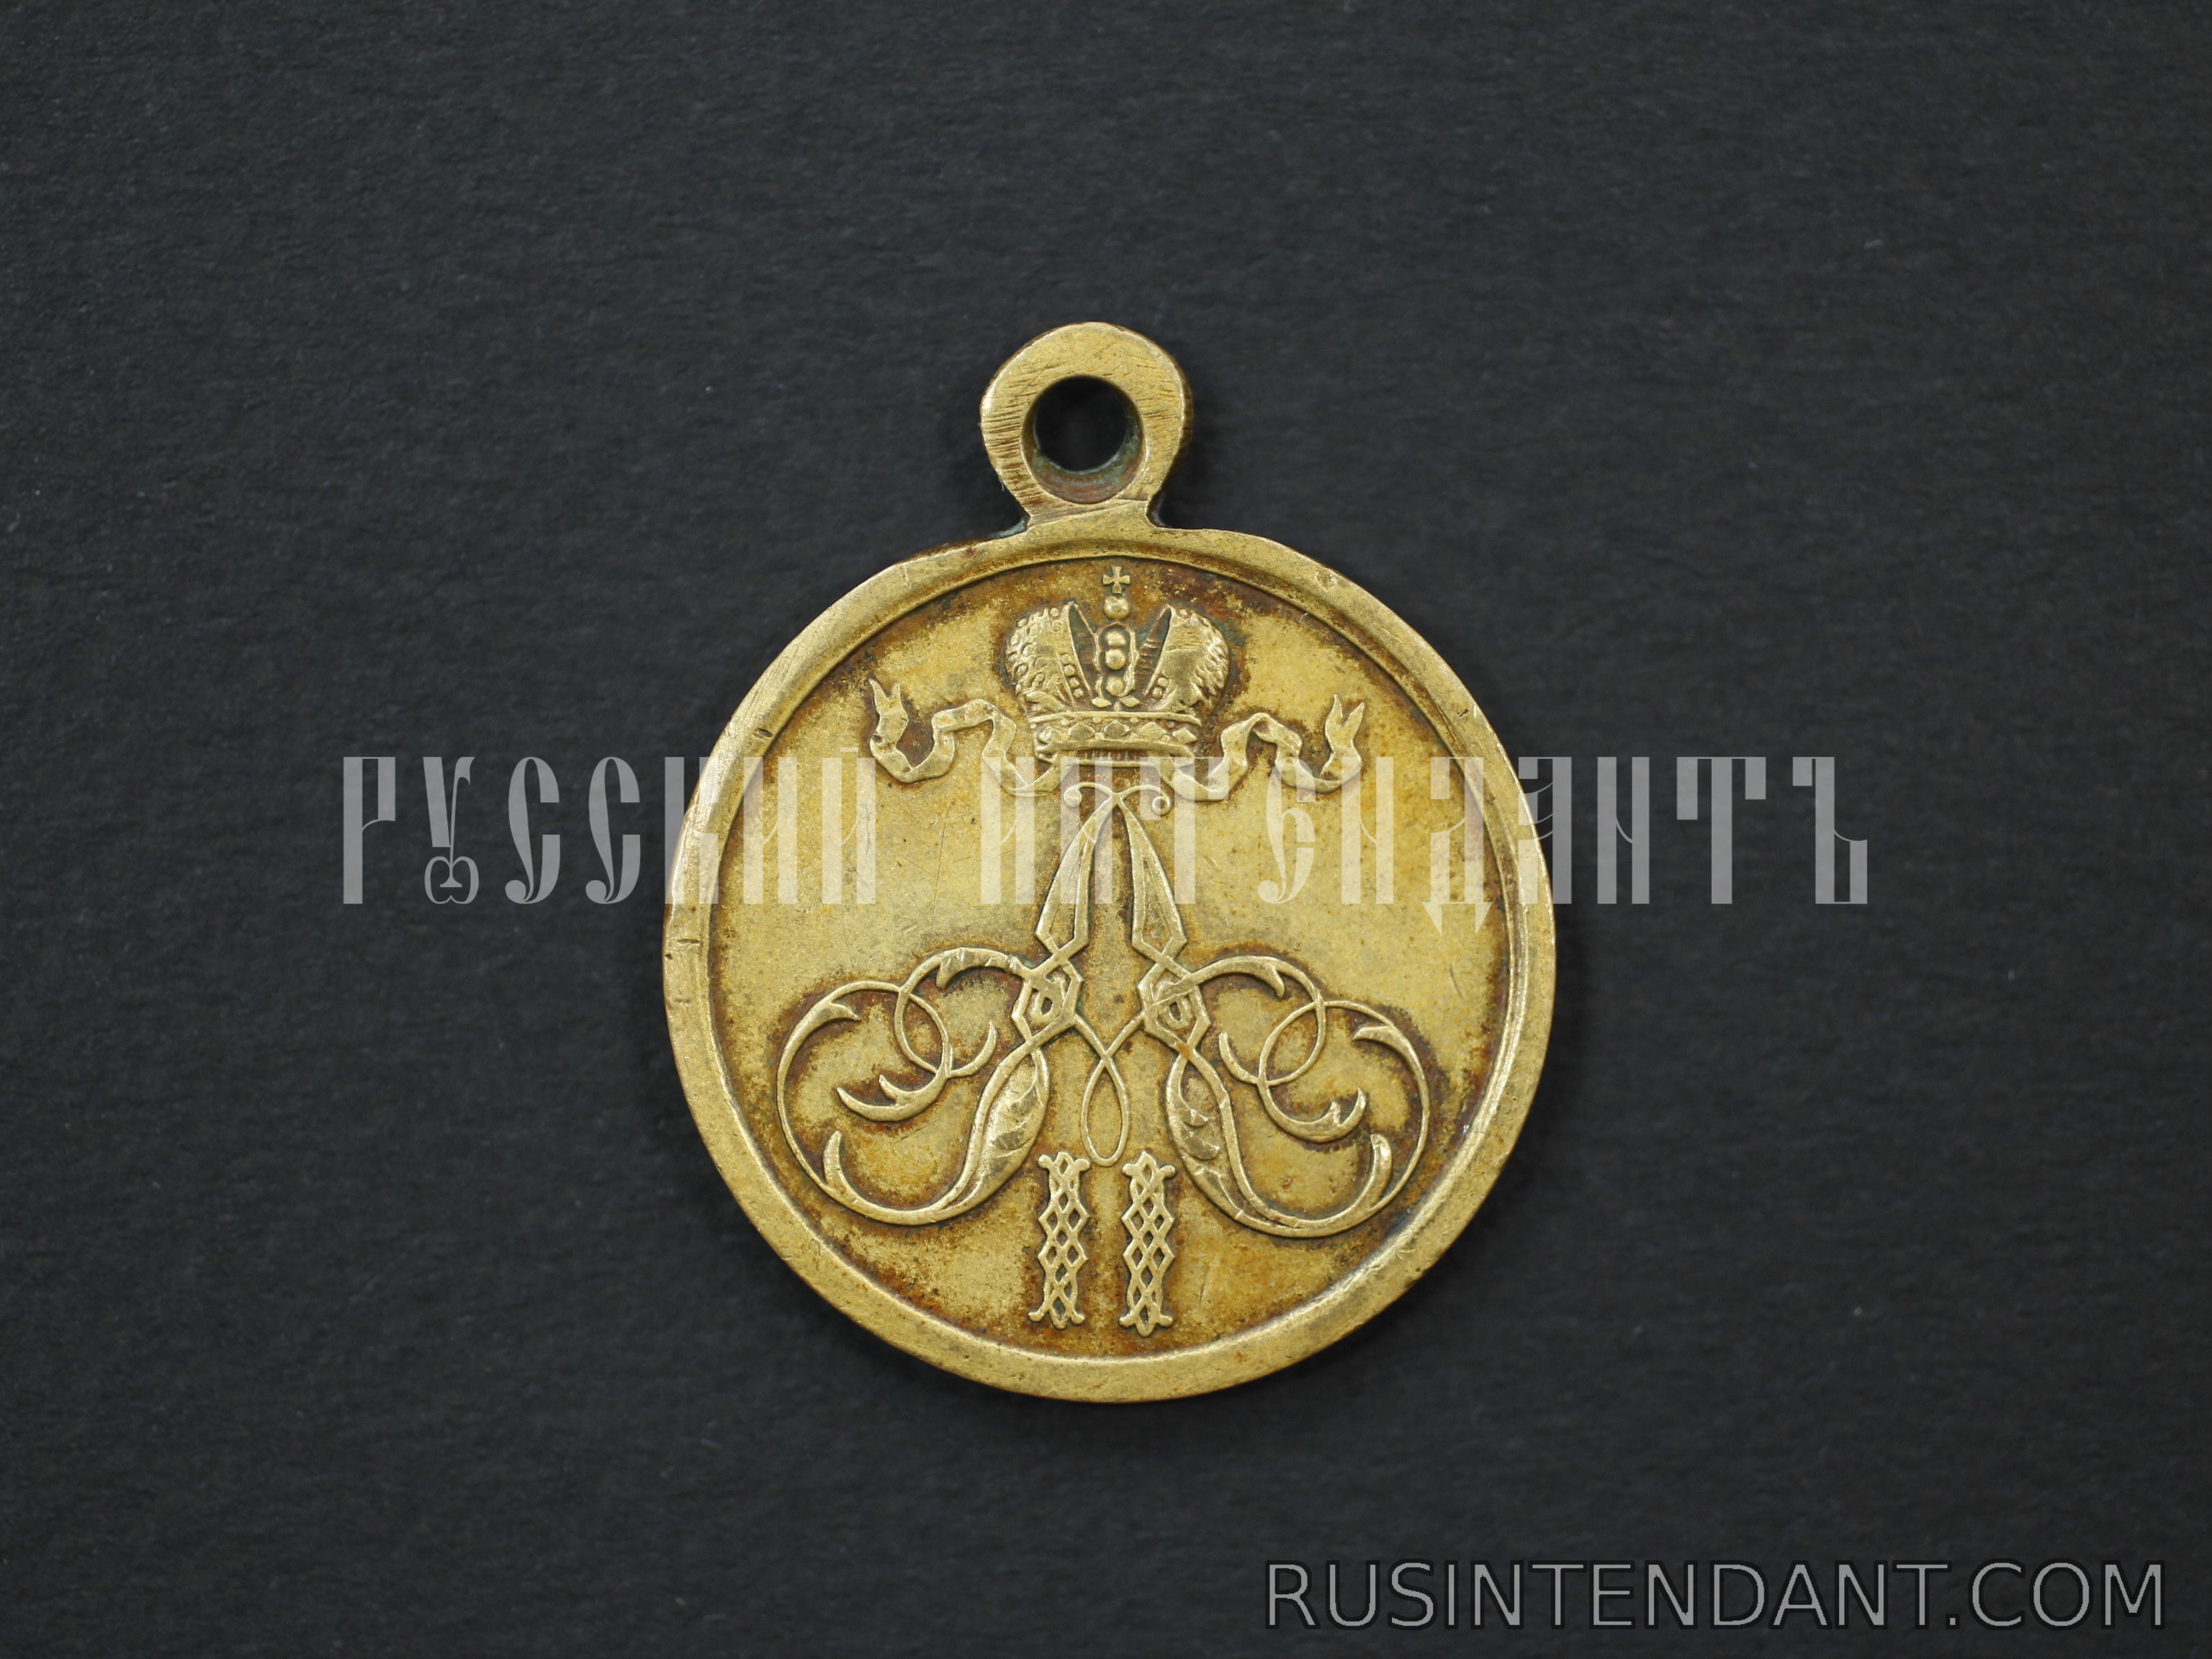 Фото 1: Медаль "За покорение Ханства Кокандского" 